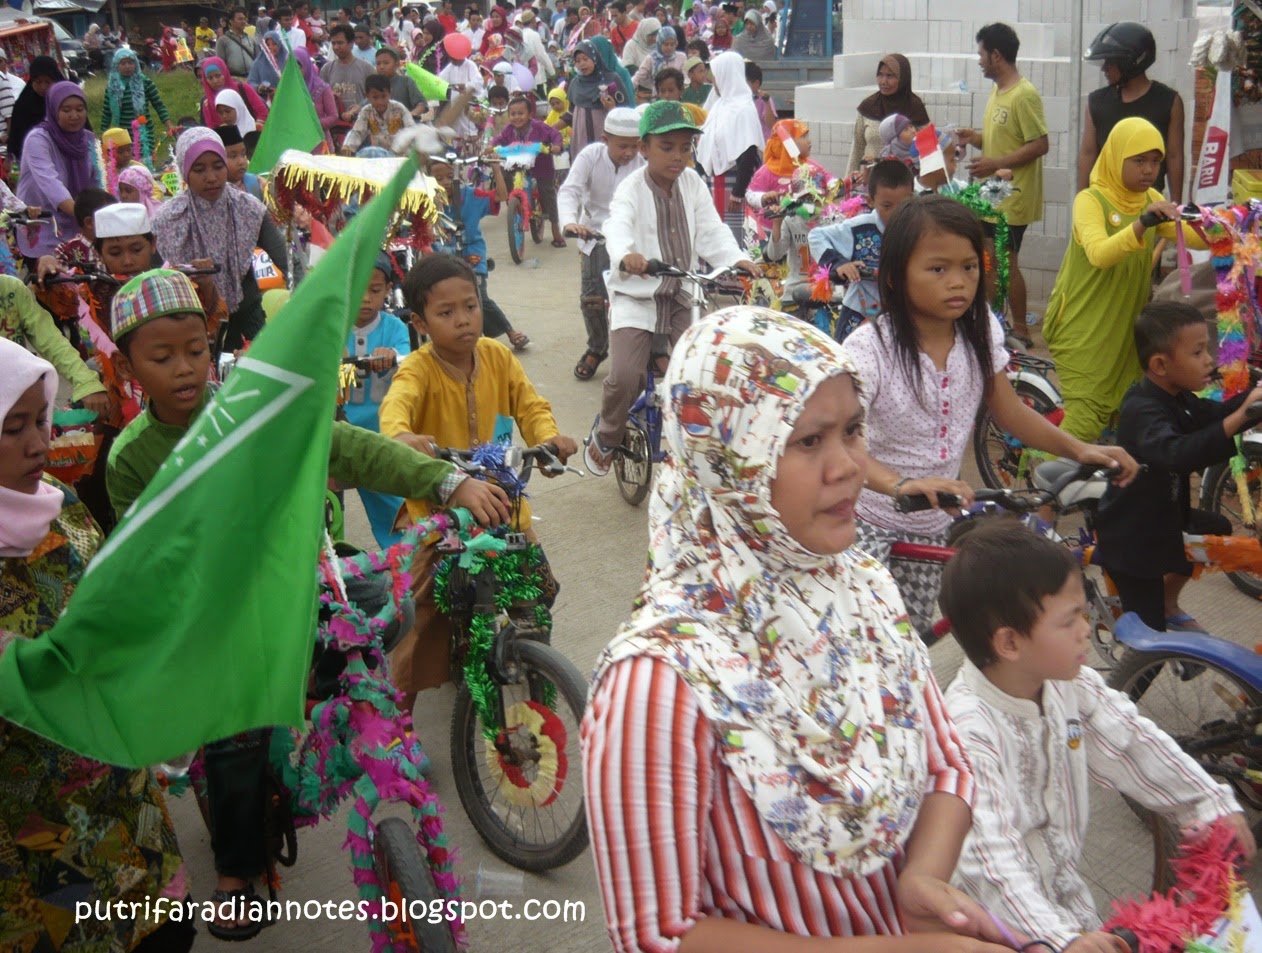  our family stories Lihat Parade Sepeda Anak di Perumahan 